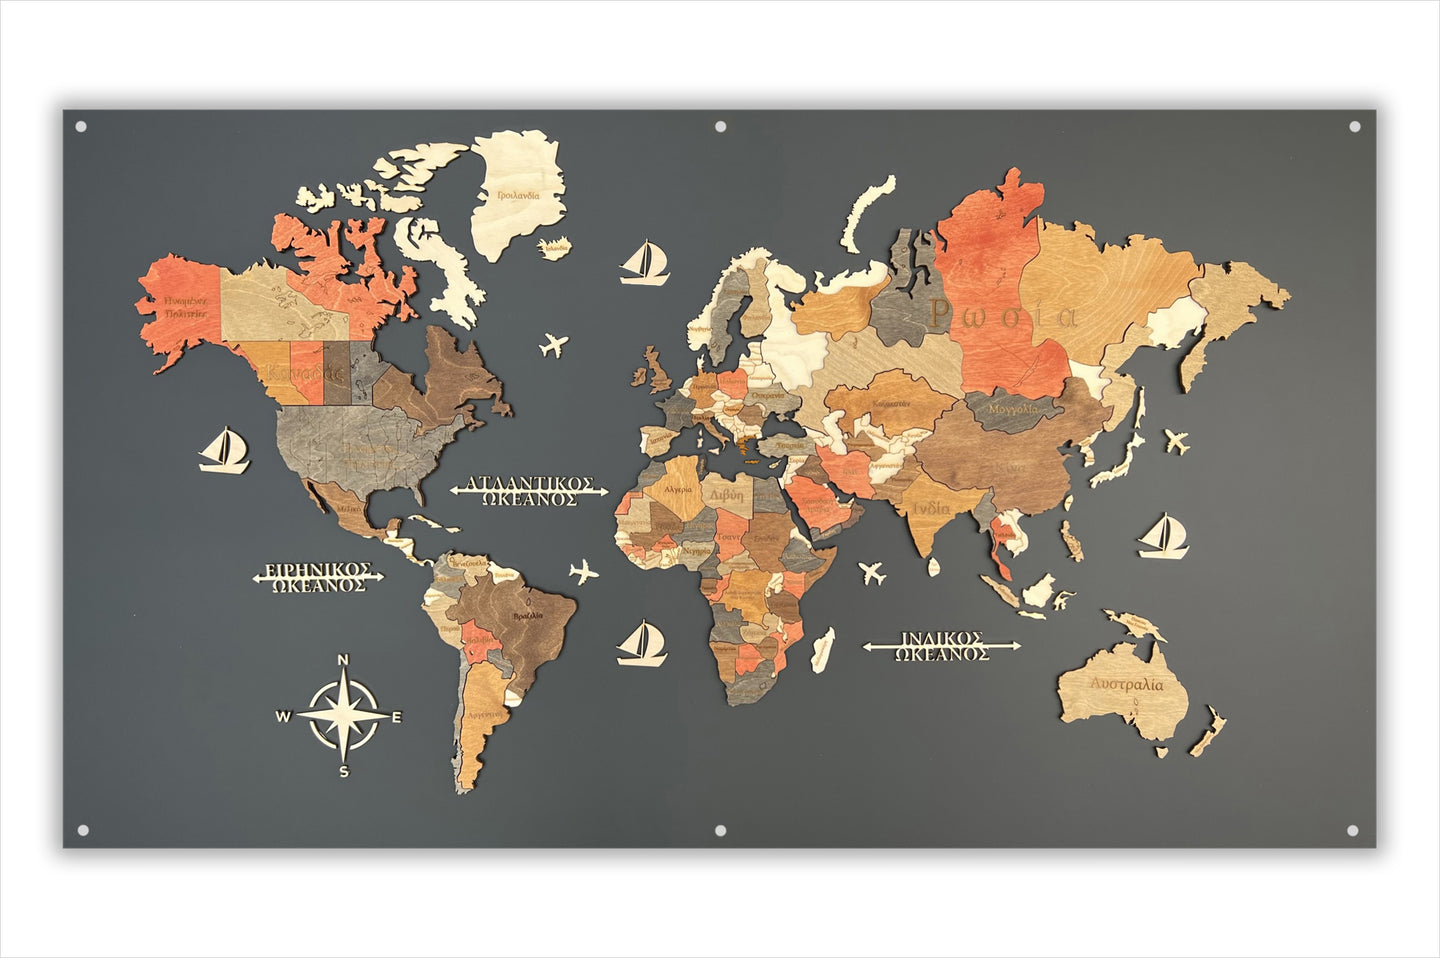 Ξύλινος τρισδιάστατος παγκόσμιος χάρτης σε plexiglass - (203 x 130) / Με ονόματα